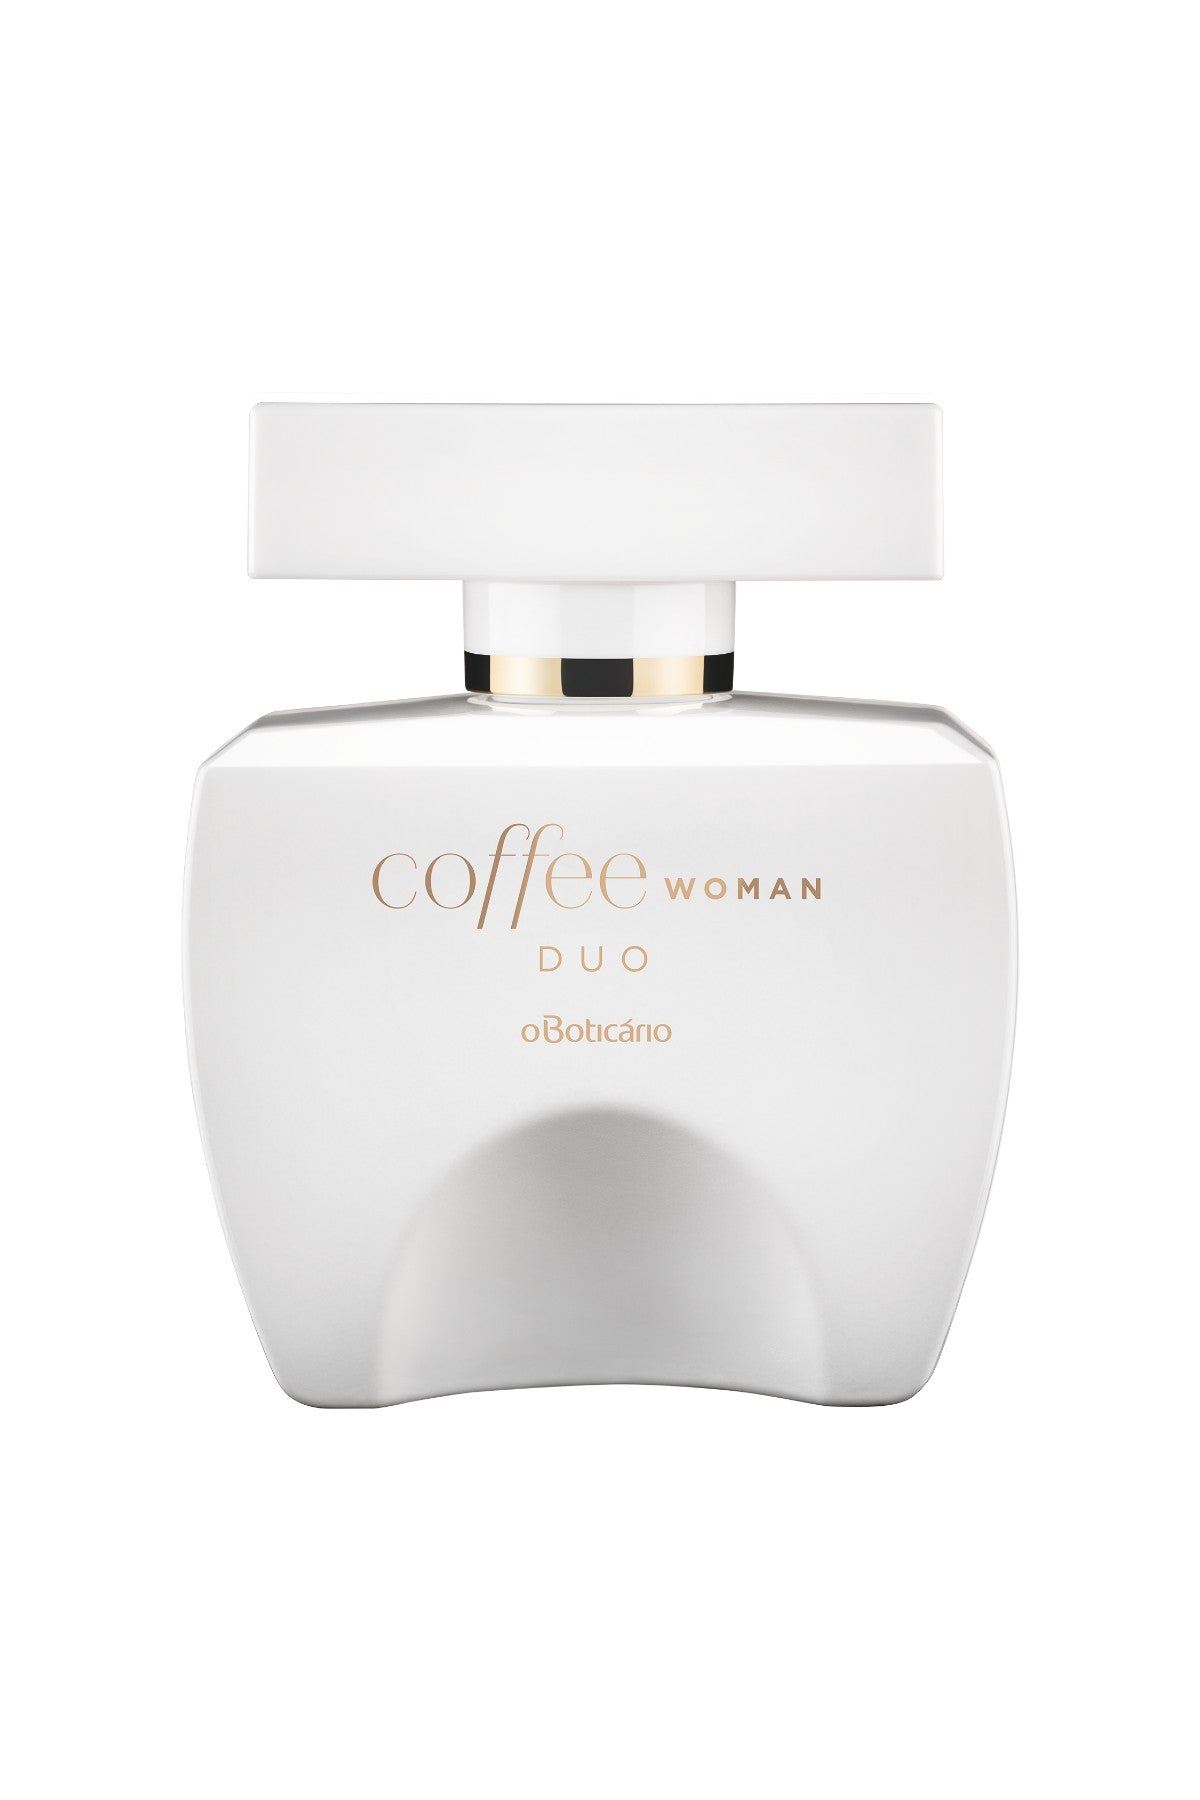 Dayse presentes - Coffee Duo Woman de O Boticário é um perfume